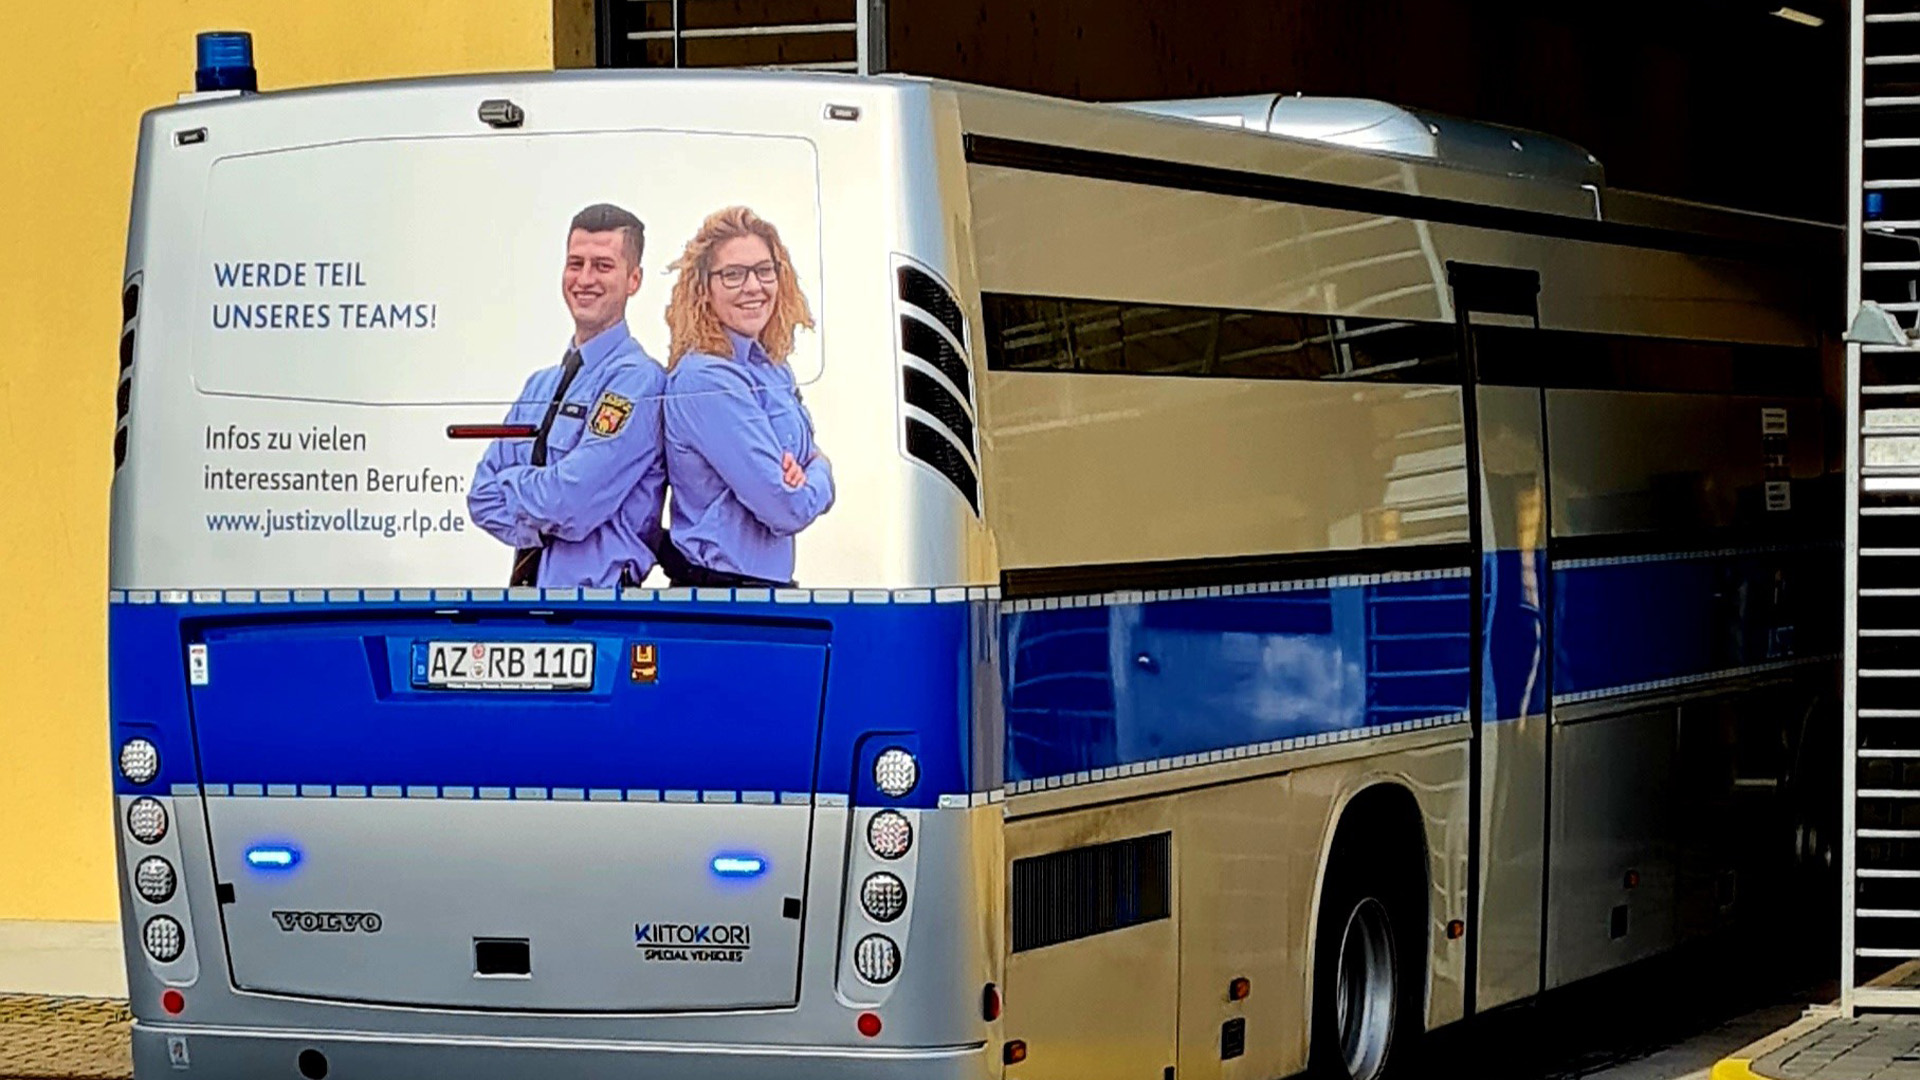 Gefangenentransport-Bus mit der Aufschrift "Werde Teil unseres Teams!" | Lucretia Gather/SWR